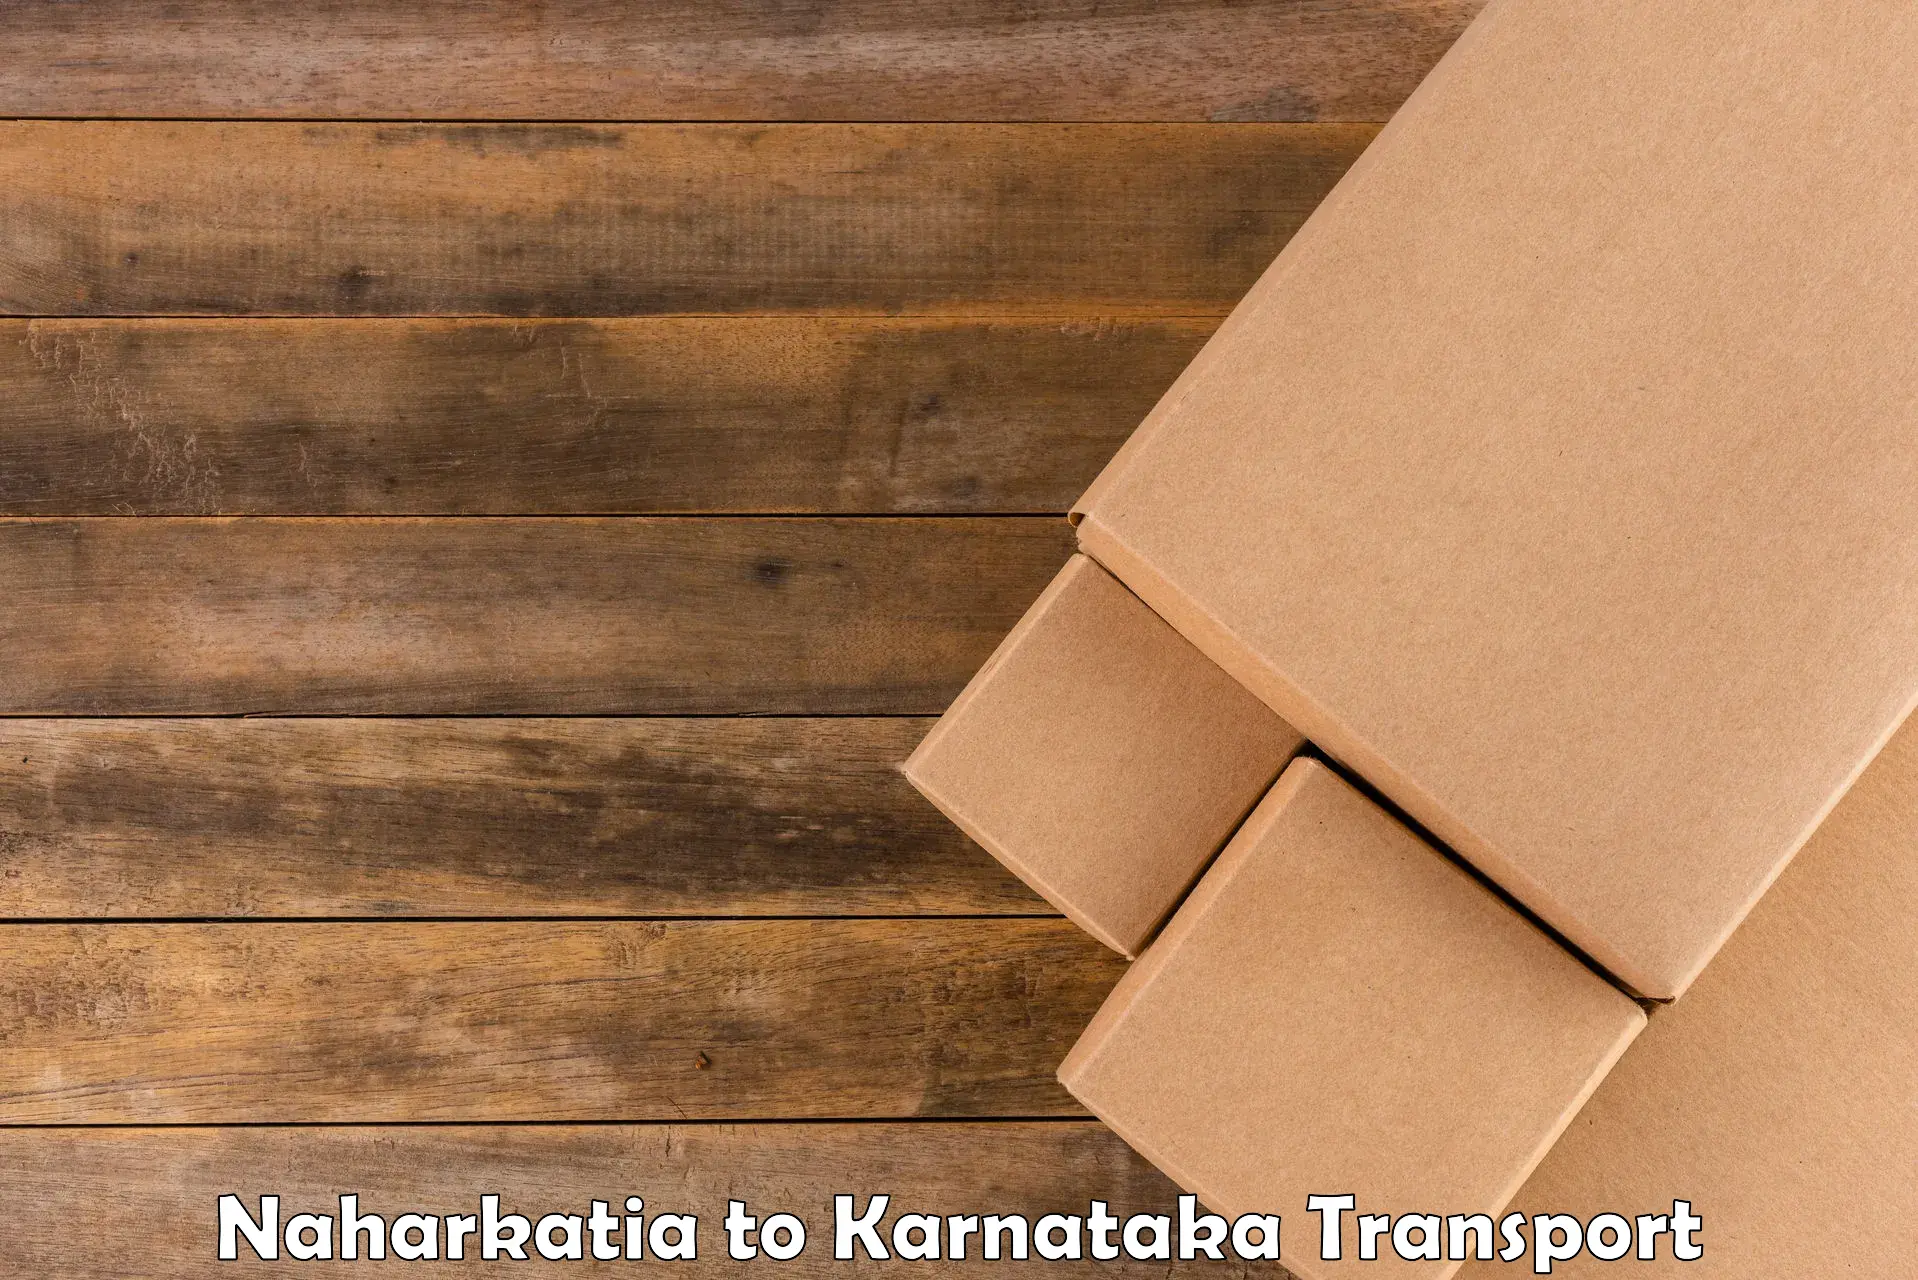 Lorry transport service Naharkatia to Jagalur